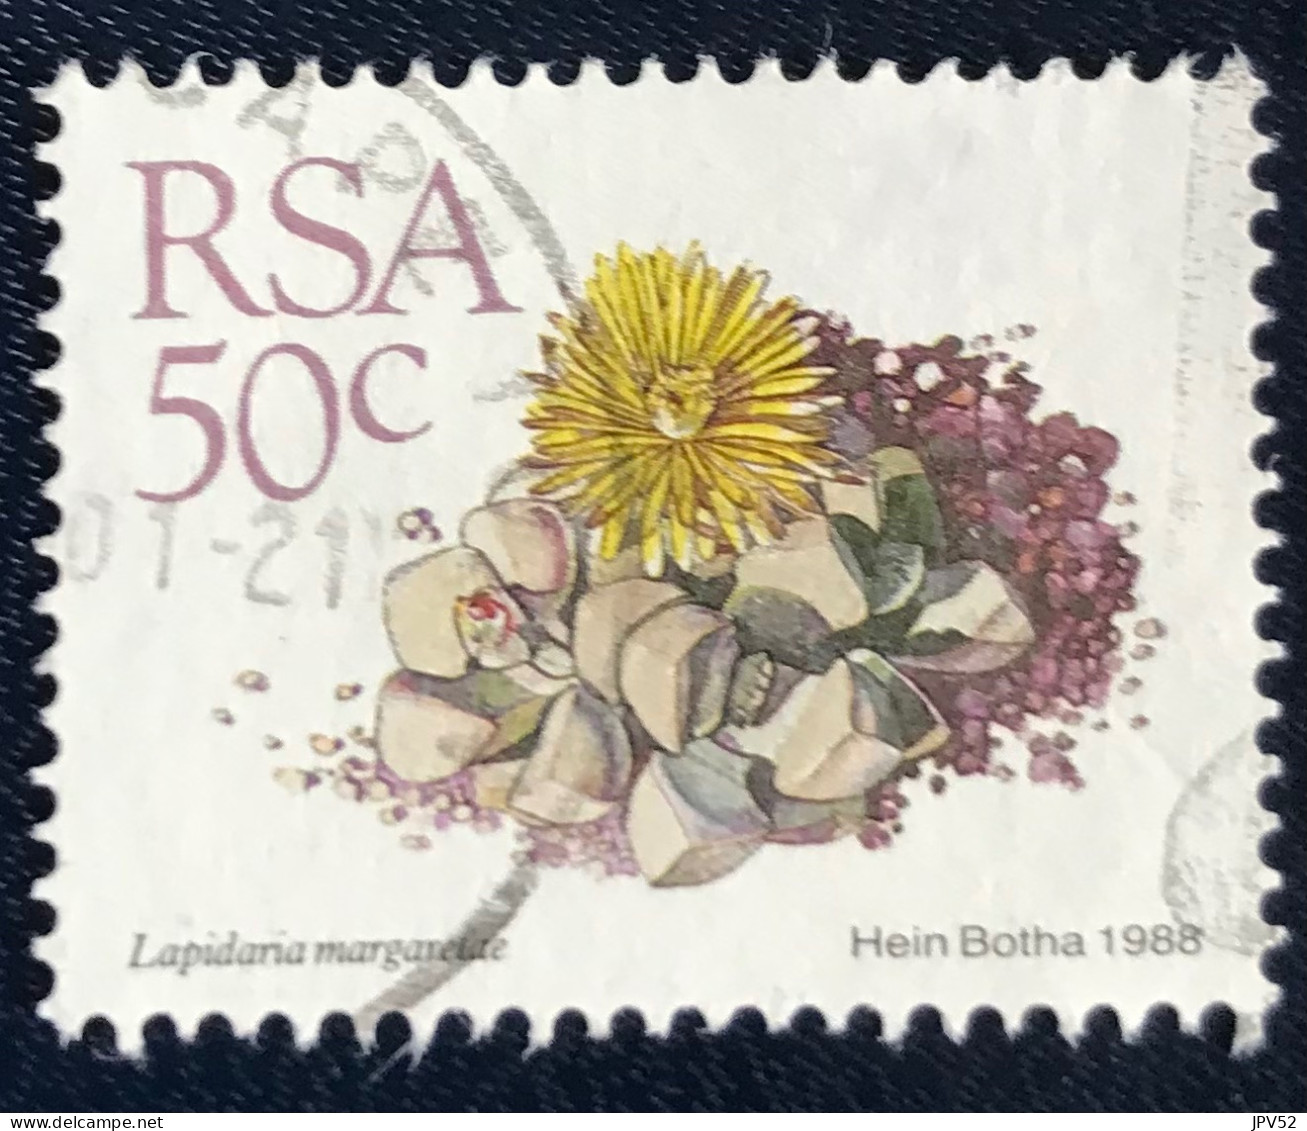 RSA - South Africa - Suid-Afrika  - C18/7 - 1988 - (°)used - Michel 754 - Vetplanten - Usados